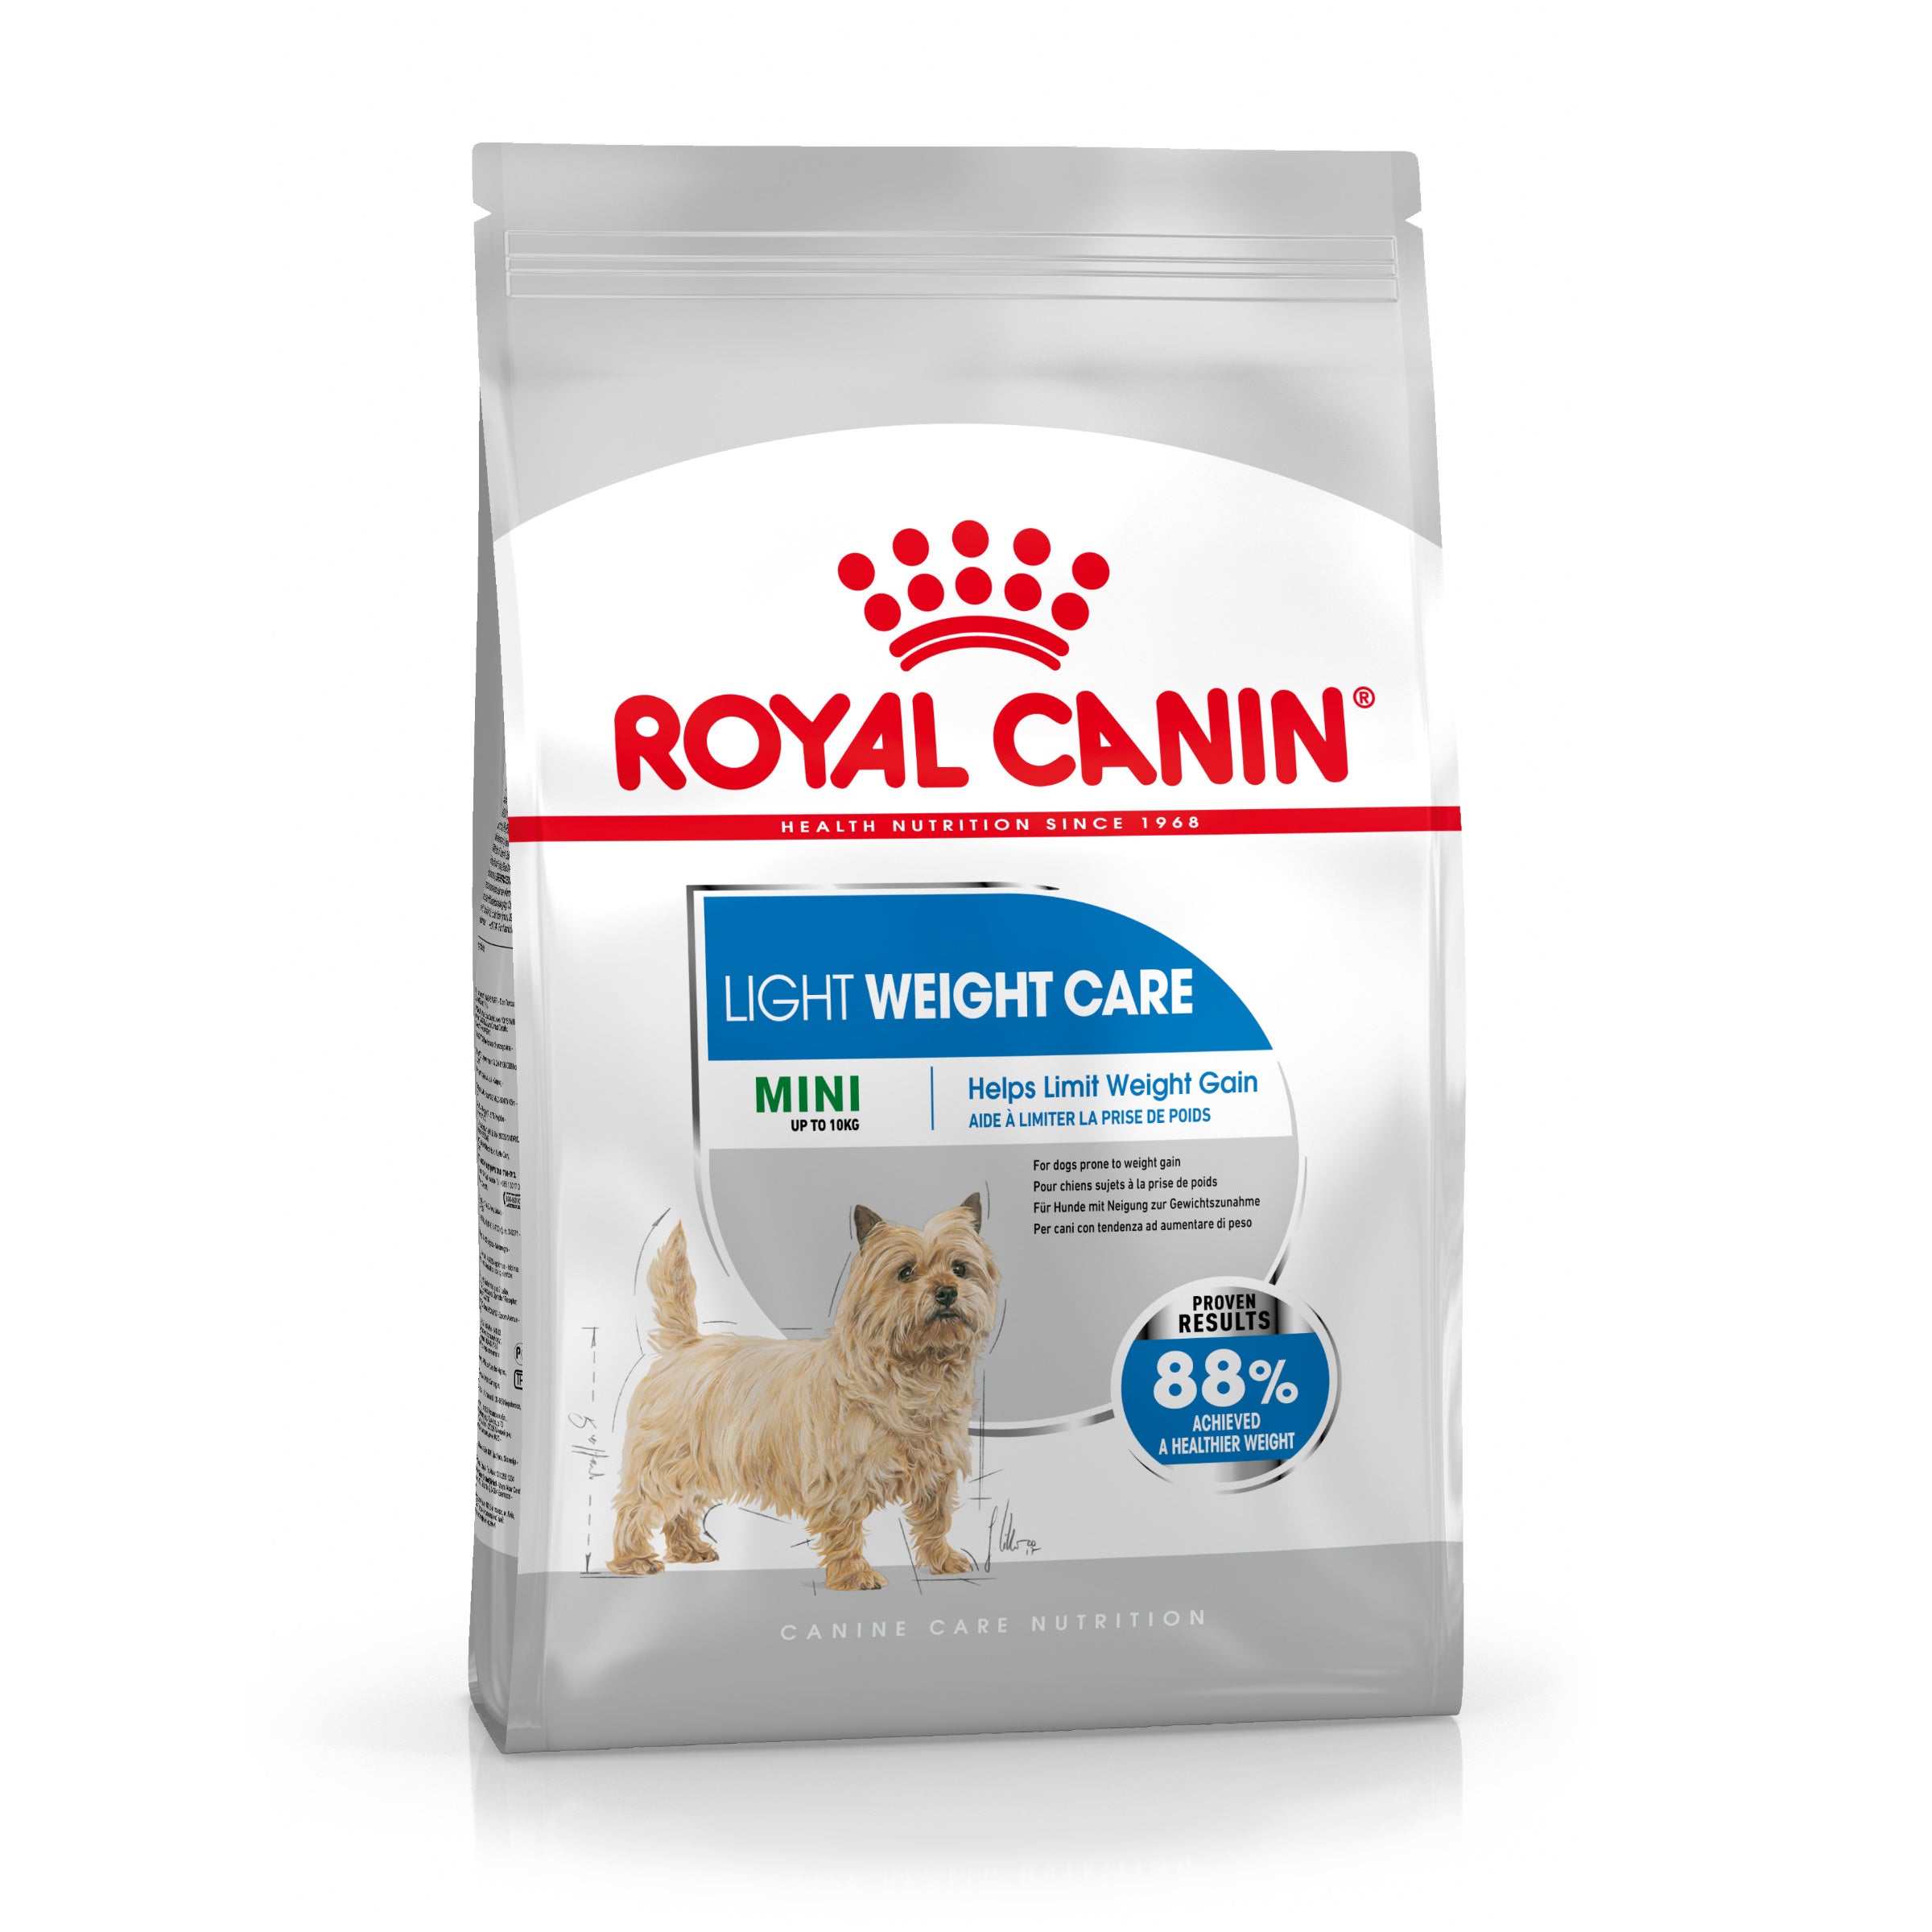 Billede af Royal canin - Royal Canin Light Weight Care Mini Adult 8kg - Dog Food